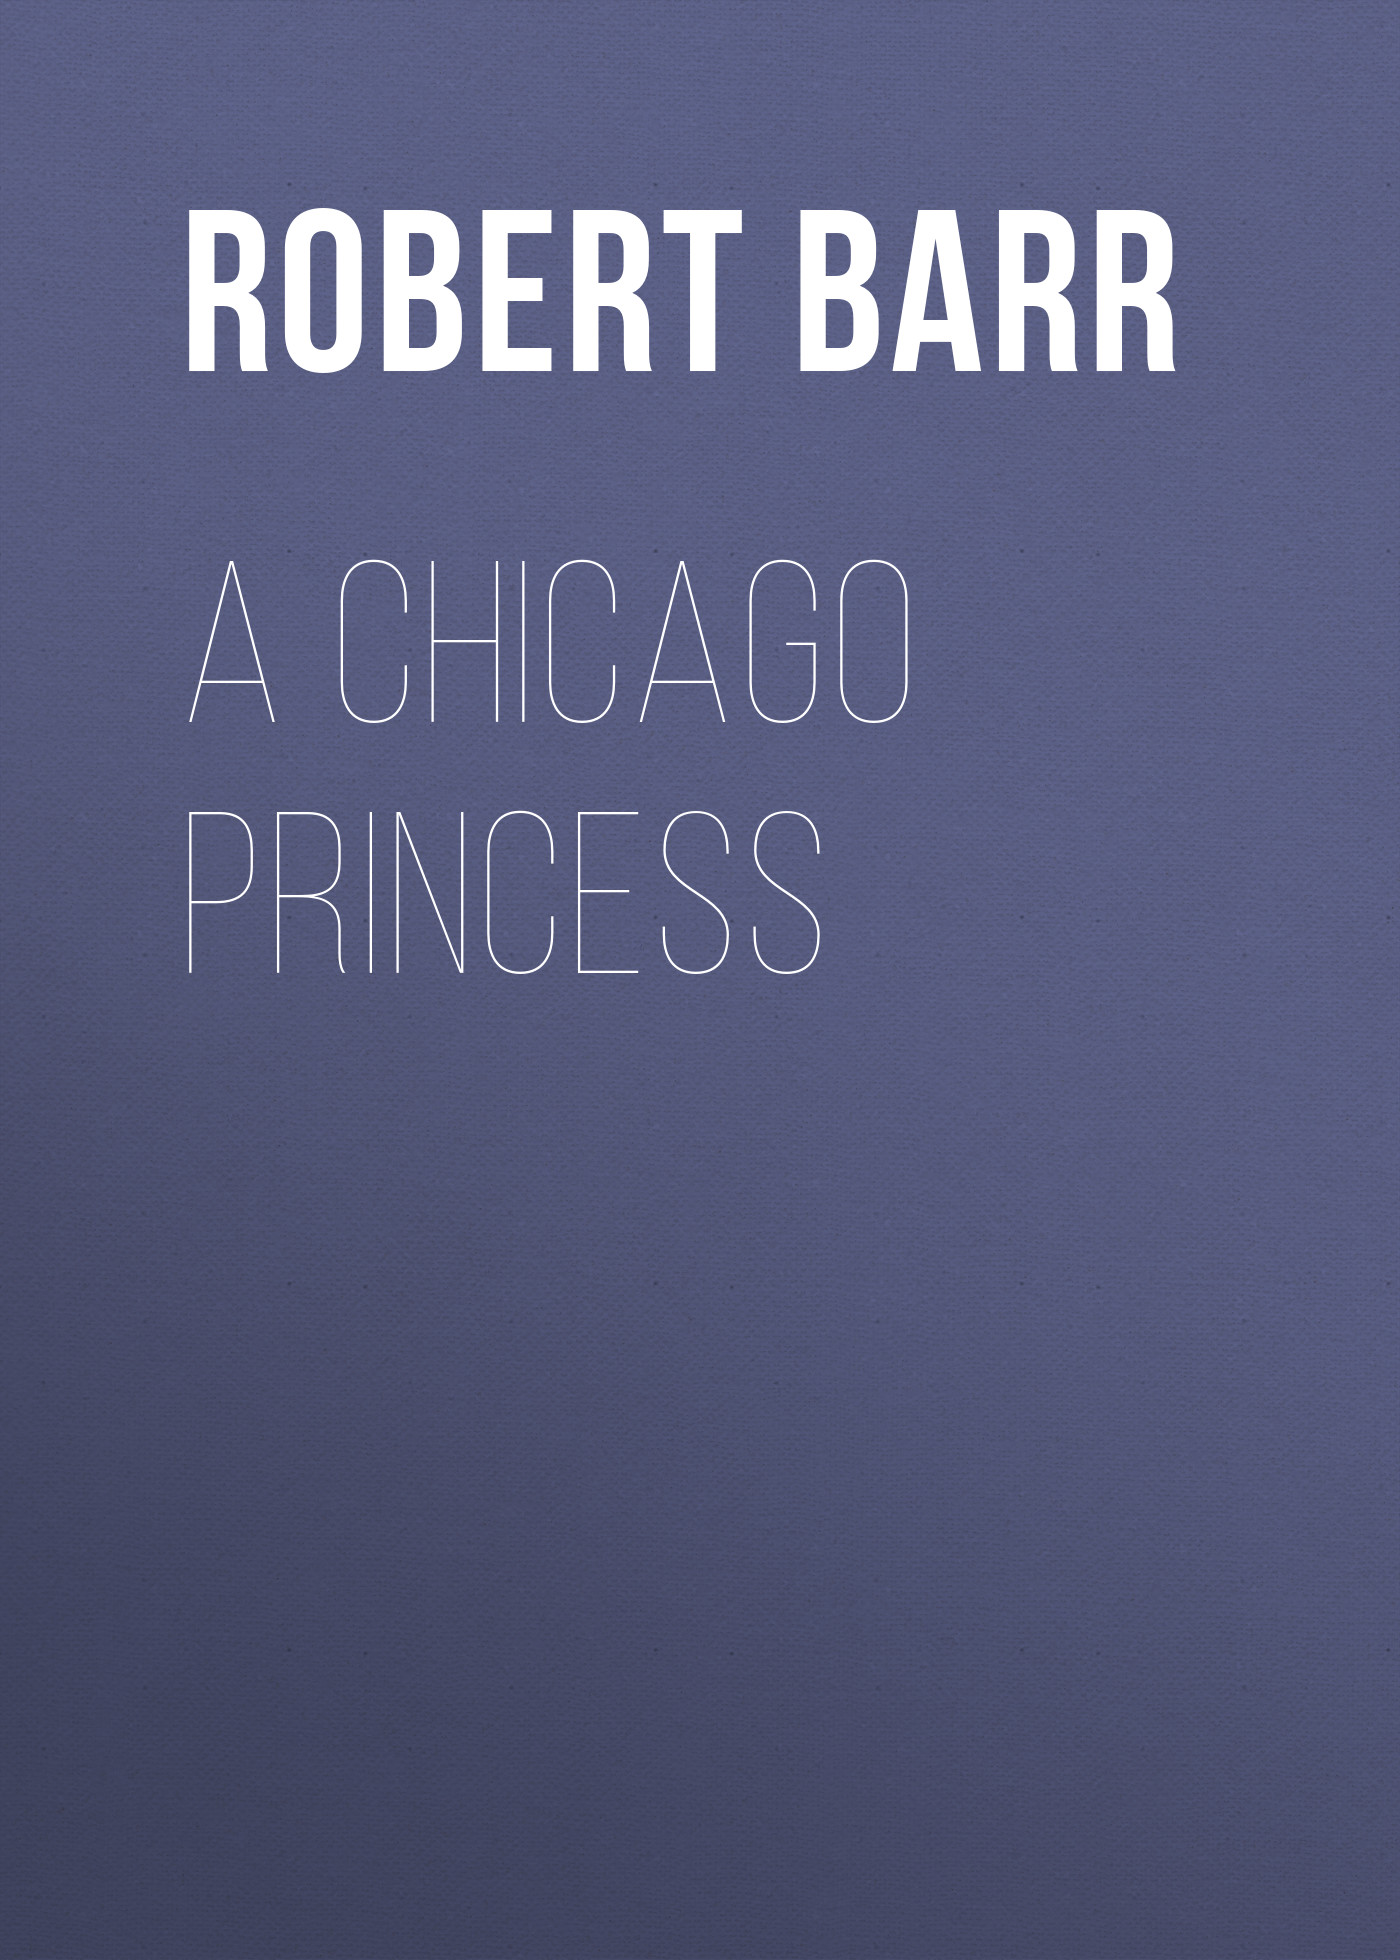 Книга A Chicago Princess из серии , созданная Robert Barr, может относится к жанру Зарубежная классика. Стоимость электронной книги A Chicago Princess с идентификатором 23157283 составляет 5.99 руб.